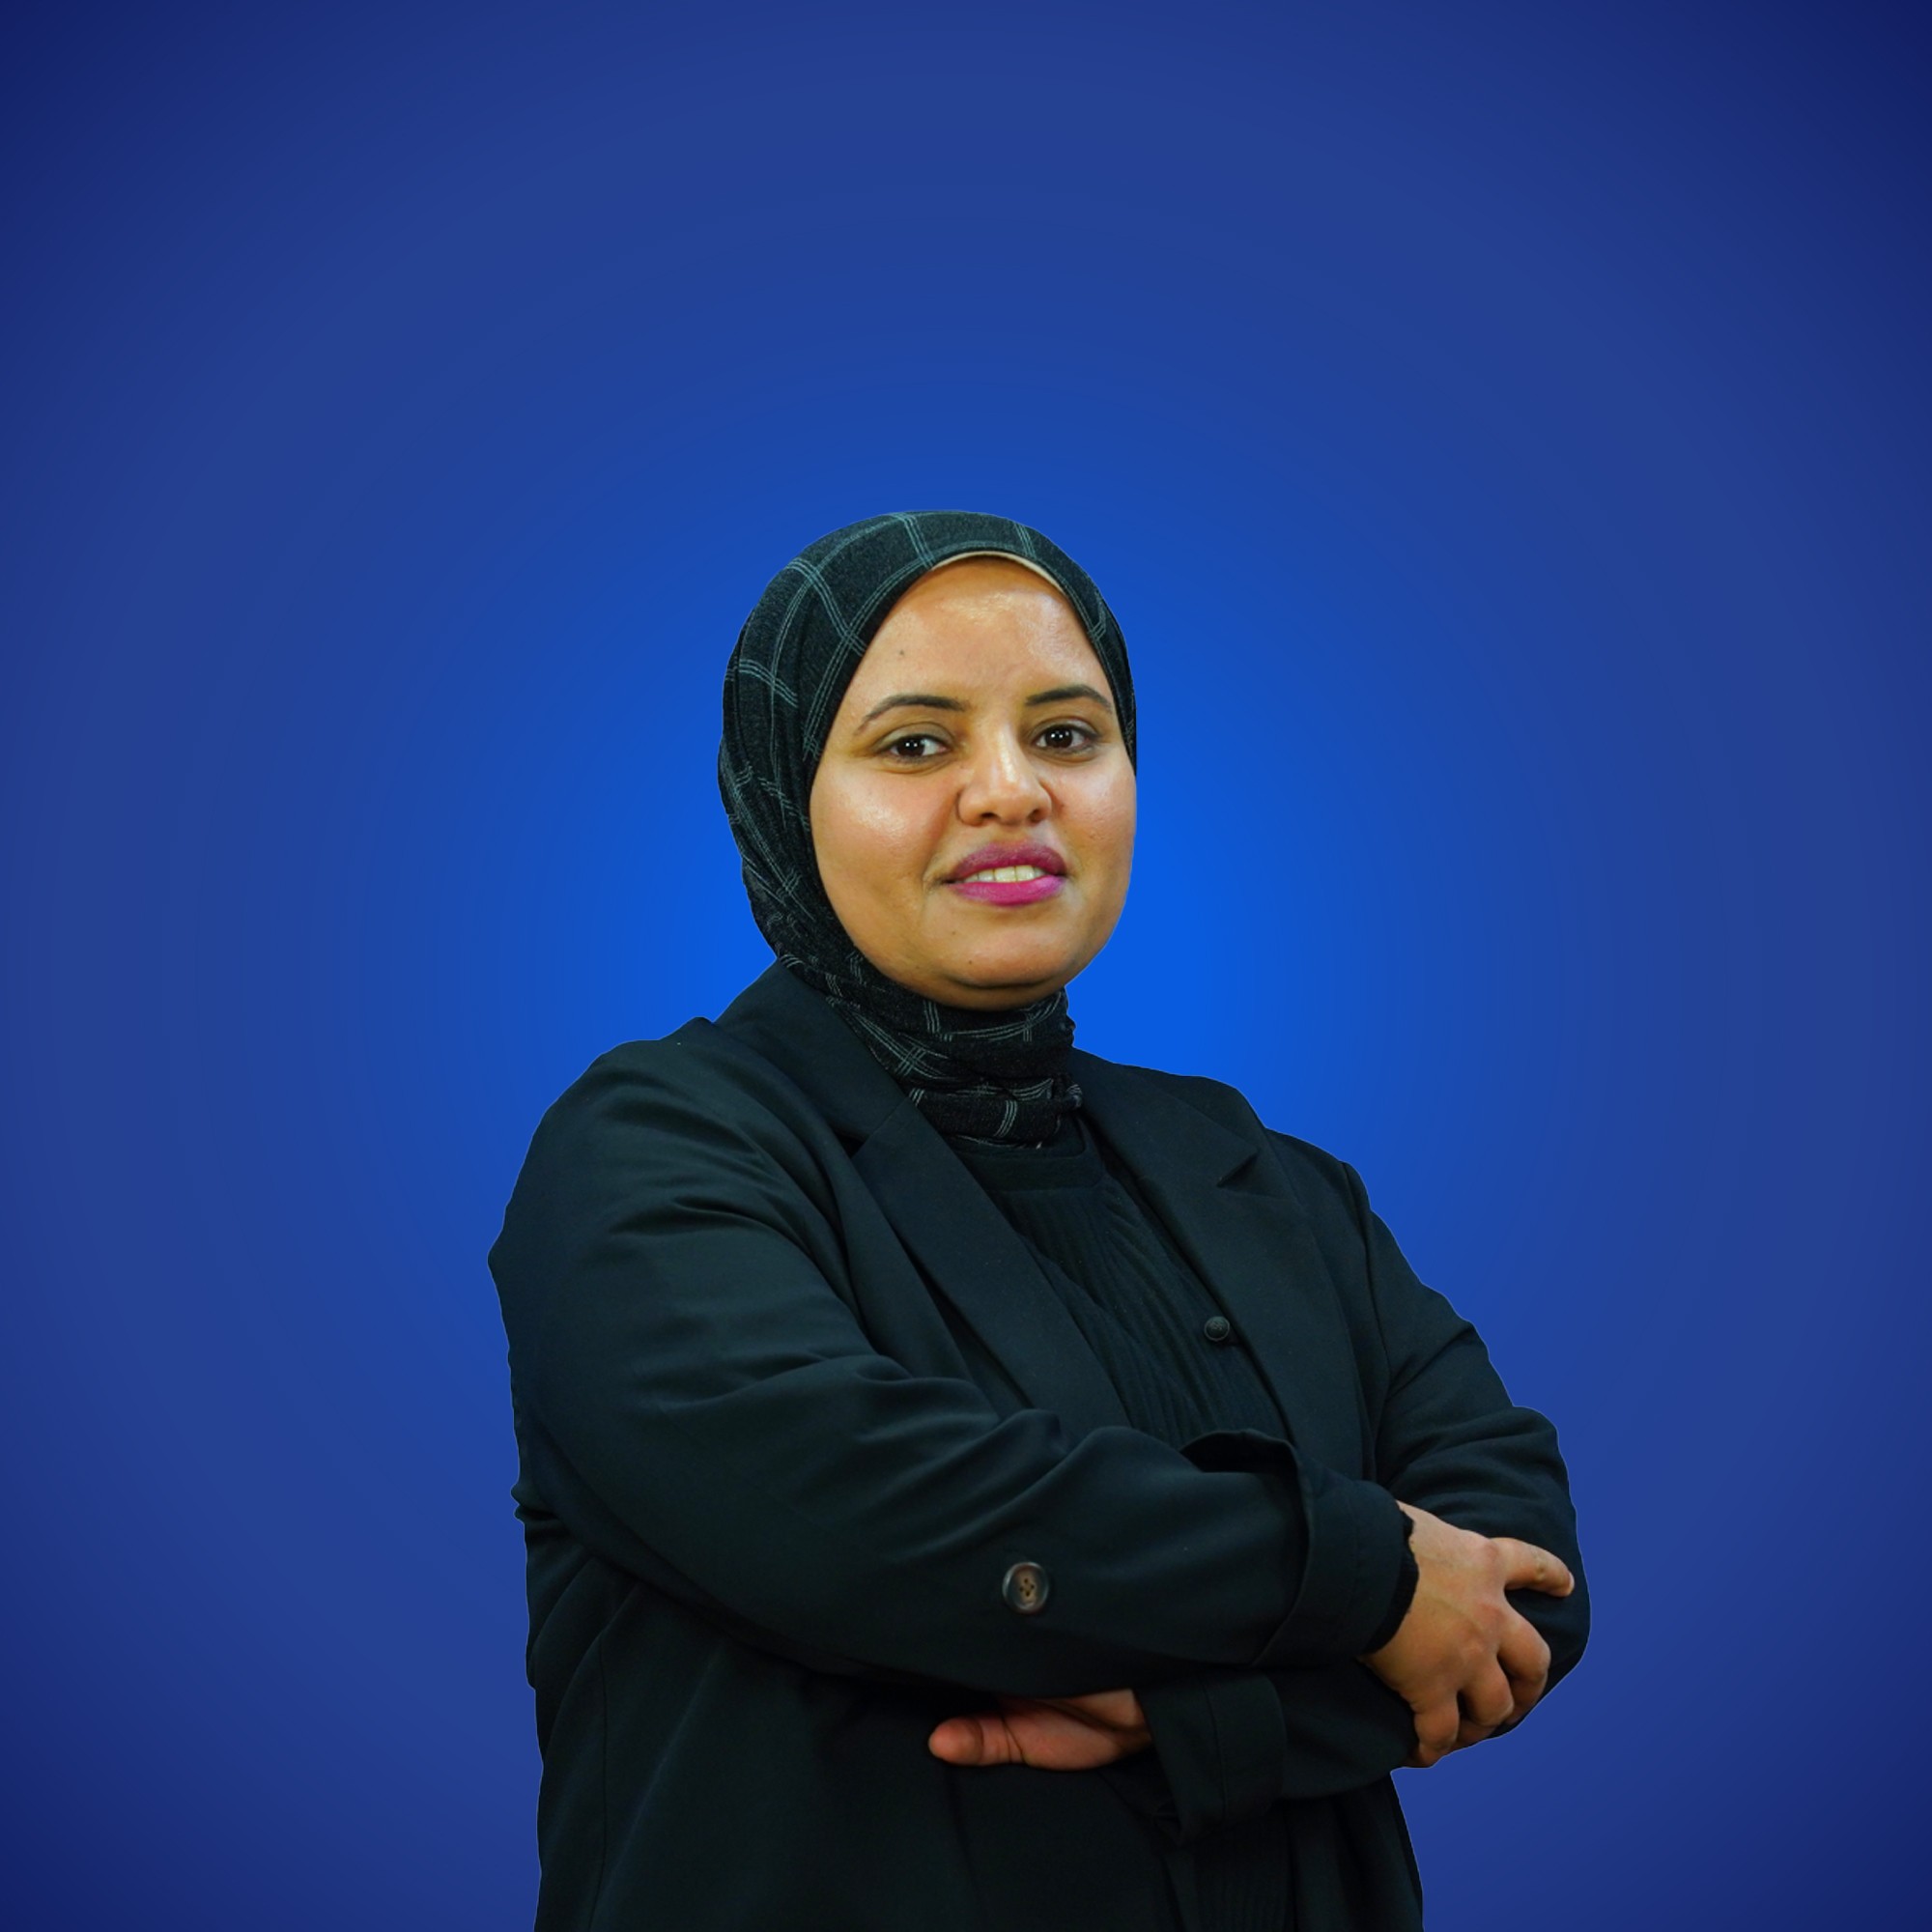 Dr. Al-Shaimaa Raafat